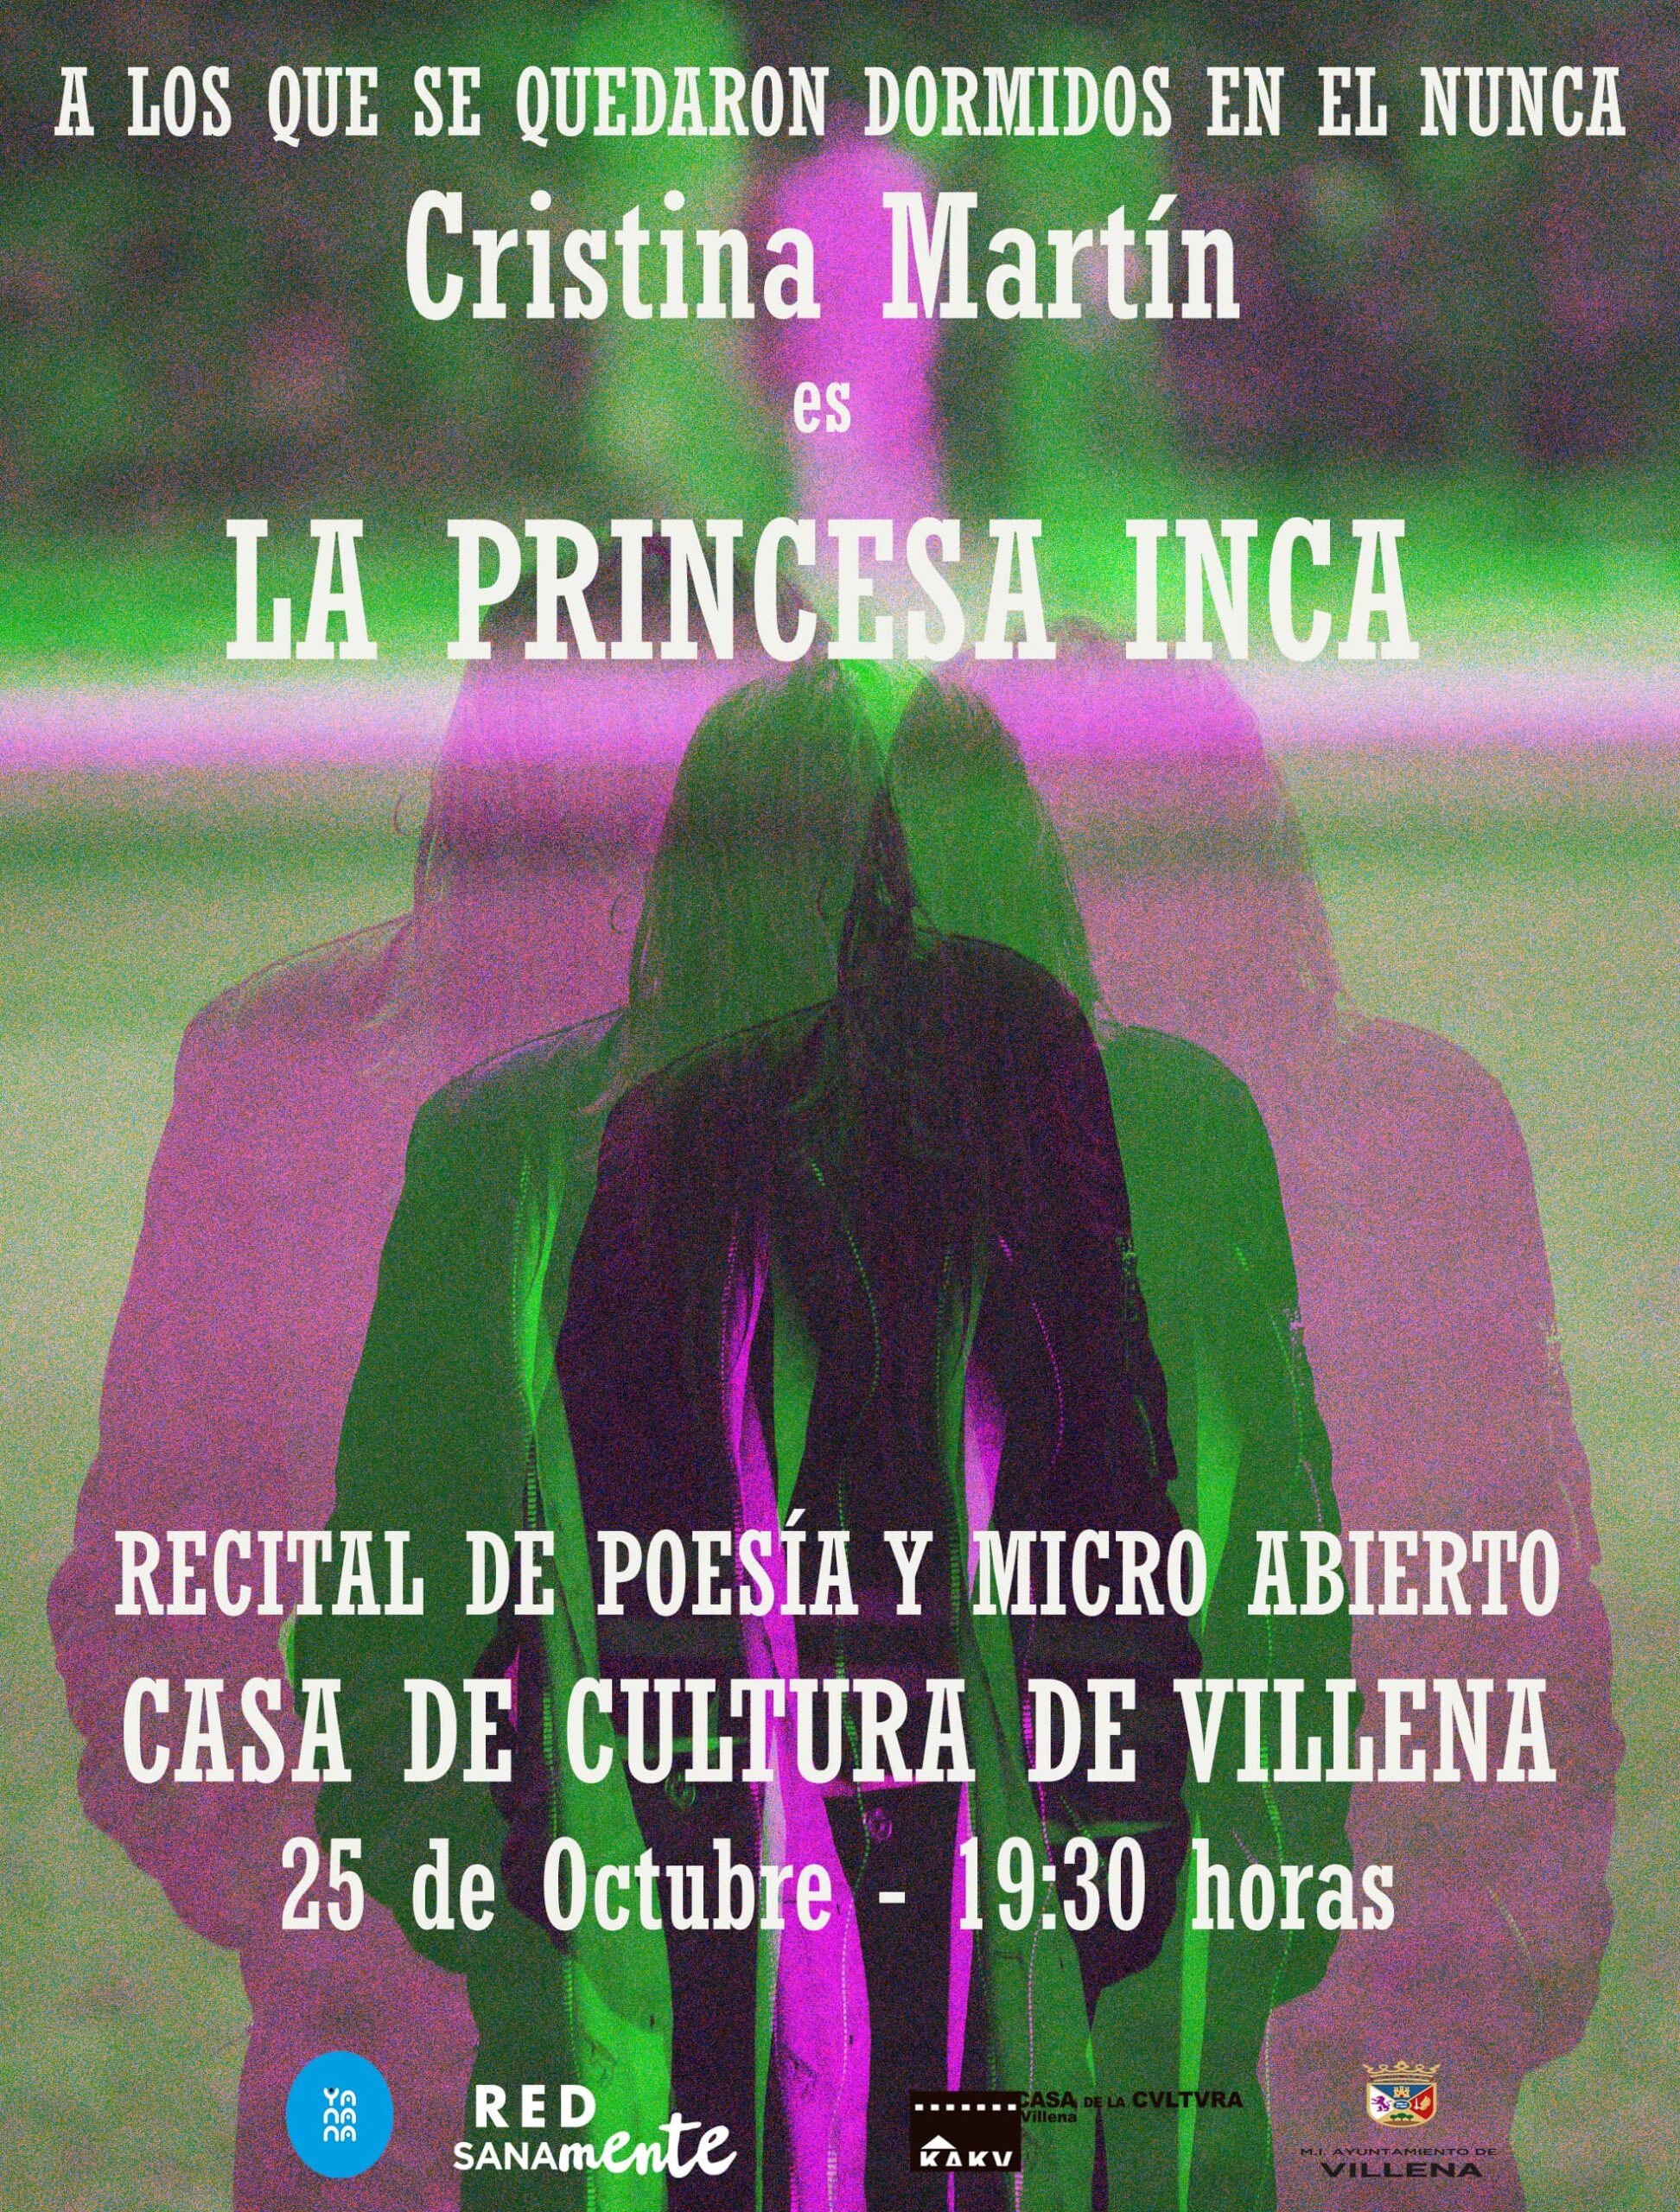 “A micro abierto” de poesía con Princesa Inca